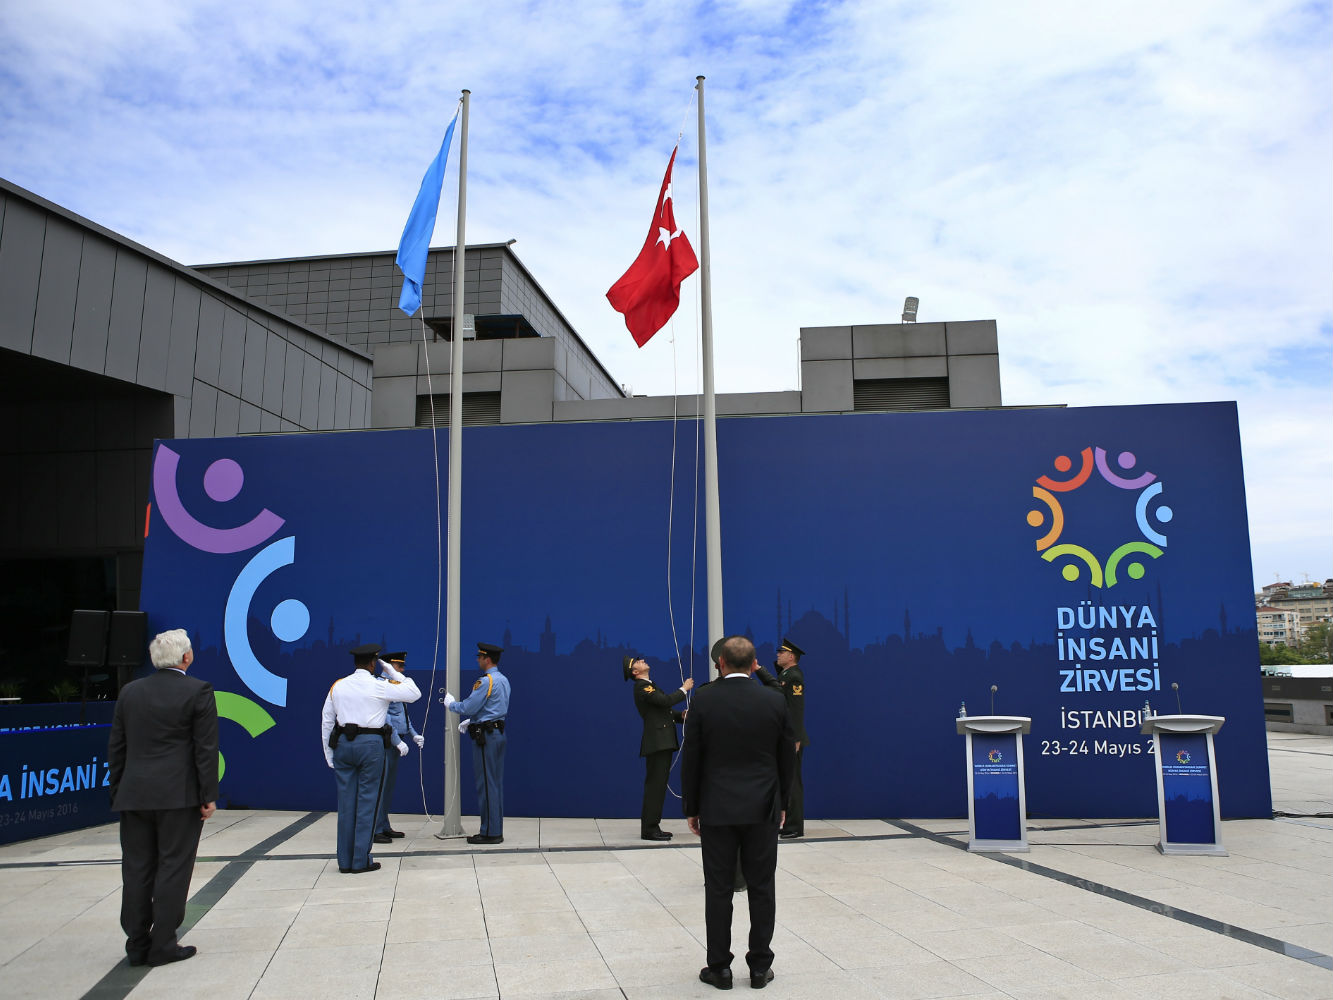 Birleşmiş Milletler'in düzenlediği Dünya İnsani Zirvesi, Türkiye'nin ev sahipliğinde bugün İstanbul'da başlıyor.